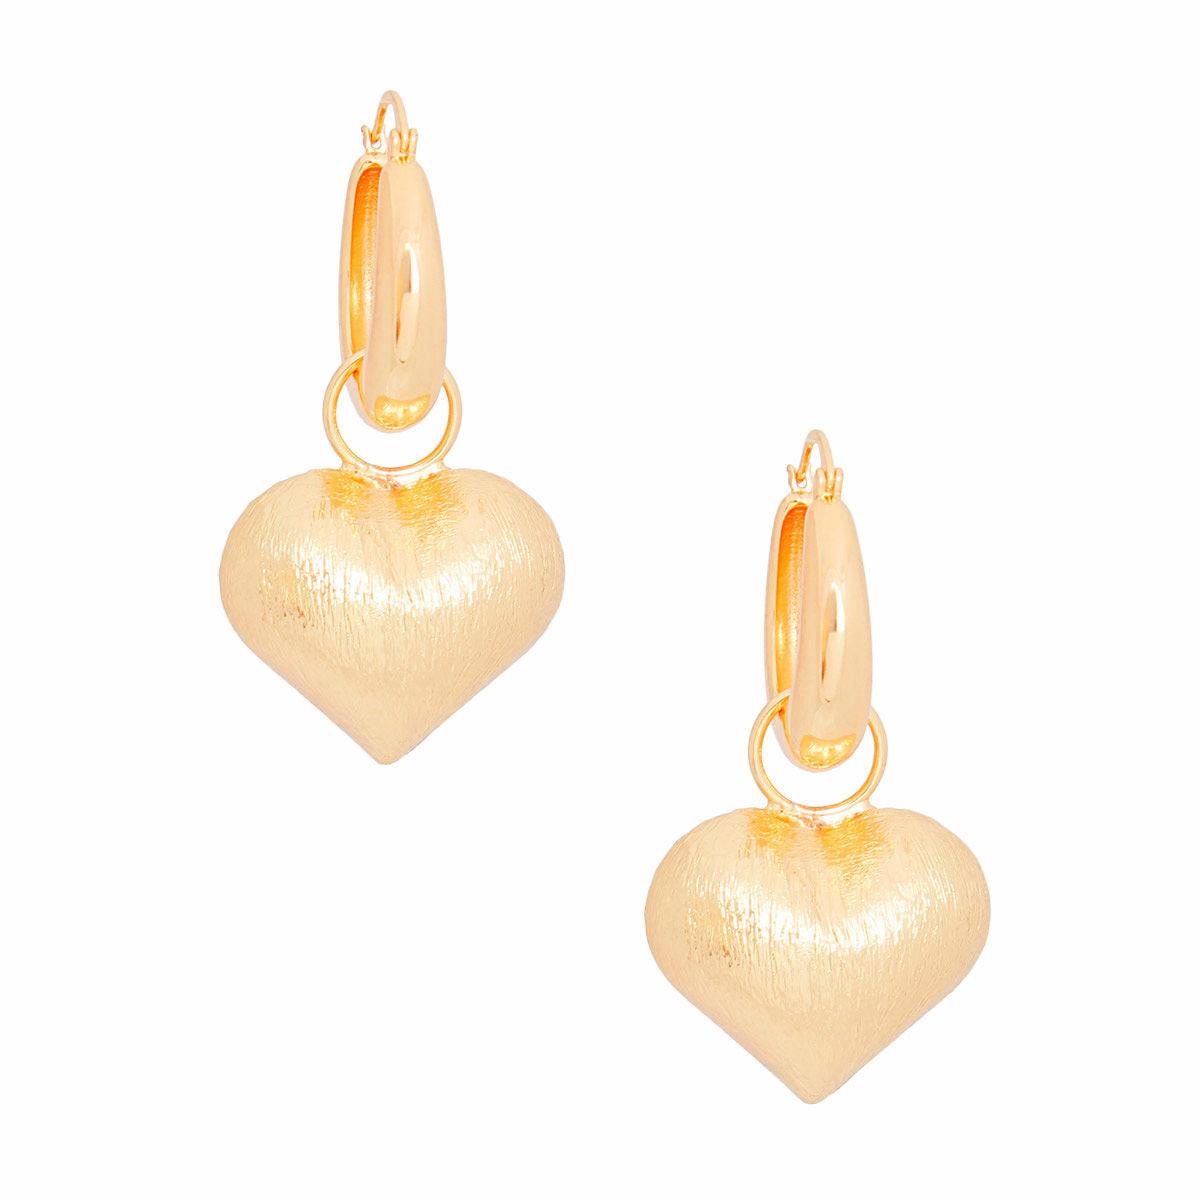 Fall in Love: Bold Gold Puffy Heart Earrings: Women's Fashion Jewelry